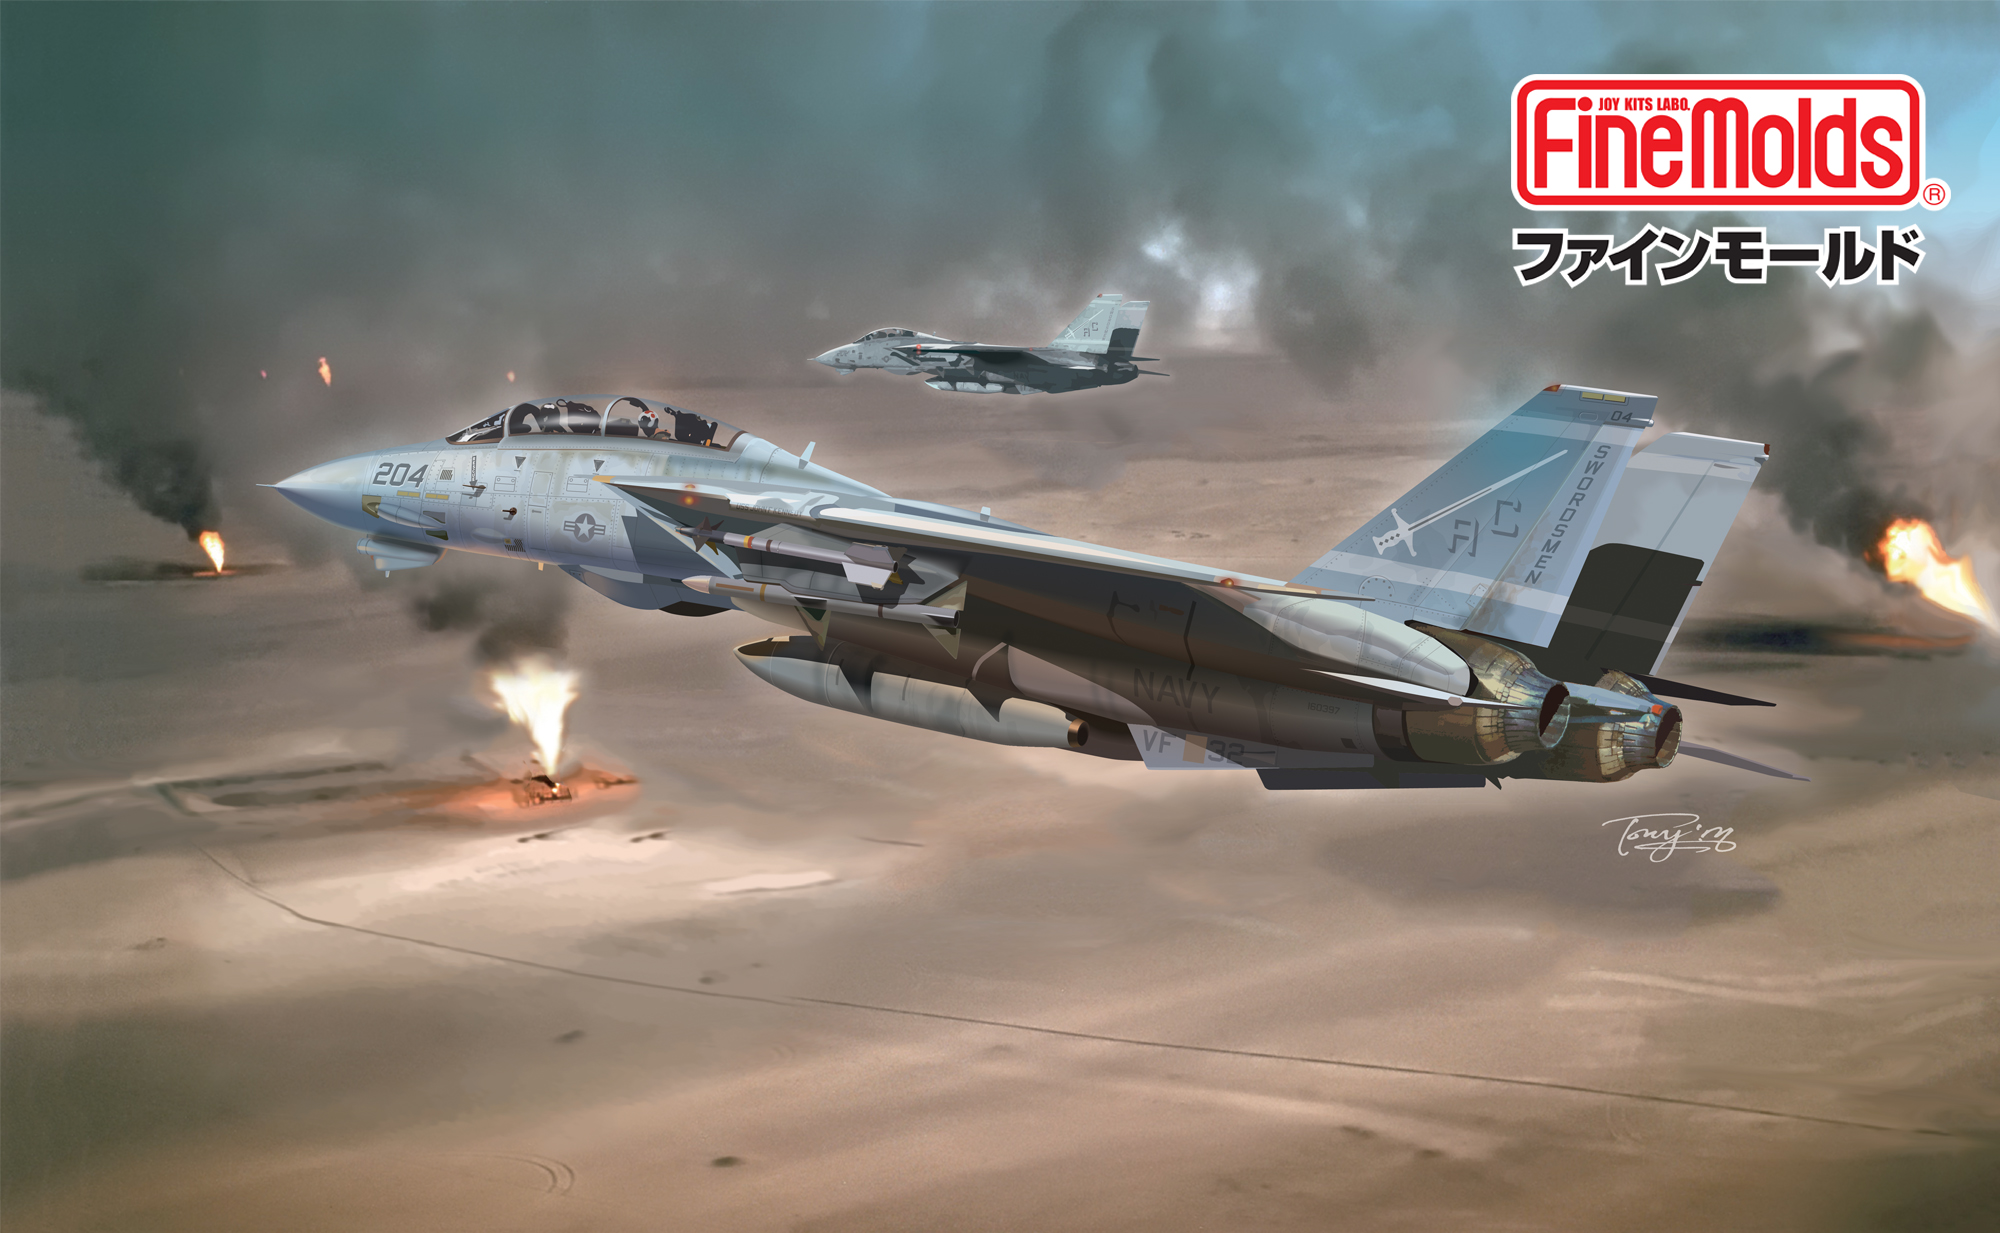 ホビーボス 1/72 エアクラフトシリーズ F-14B トムキャット プラモデル-